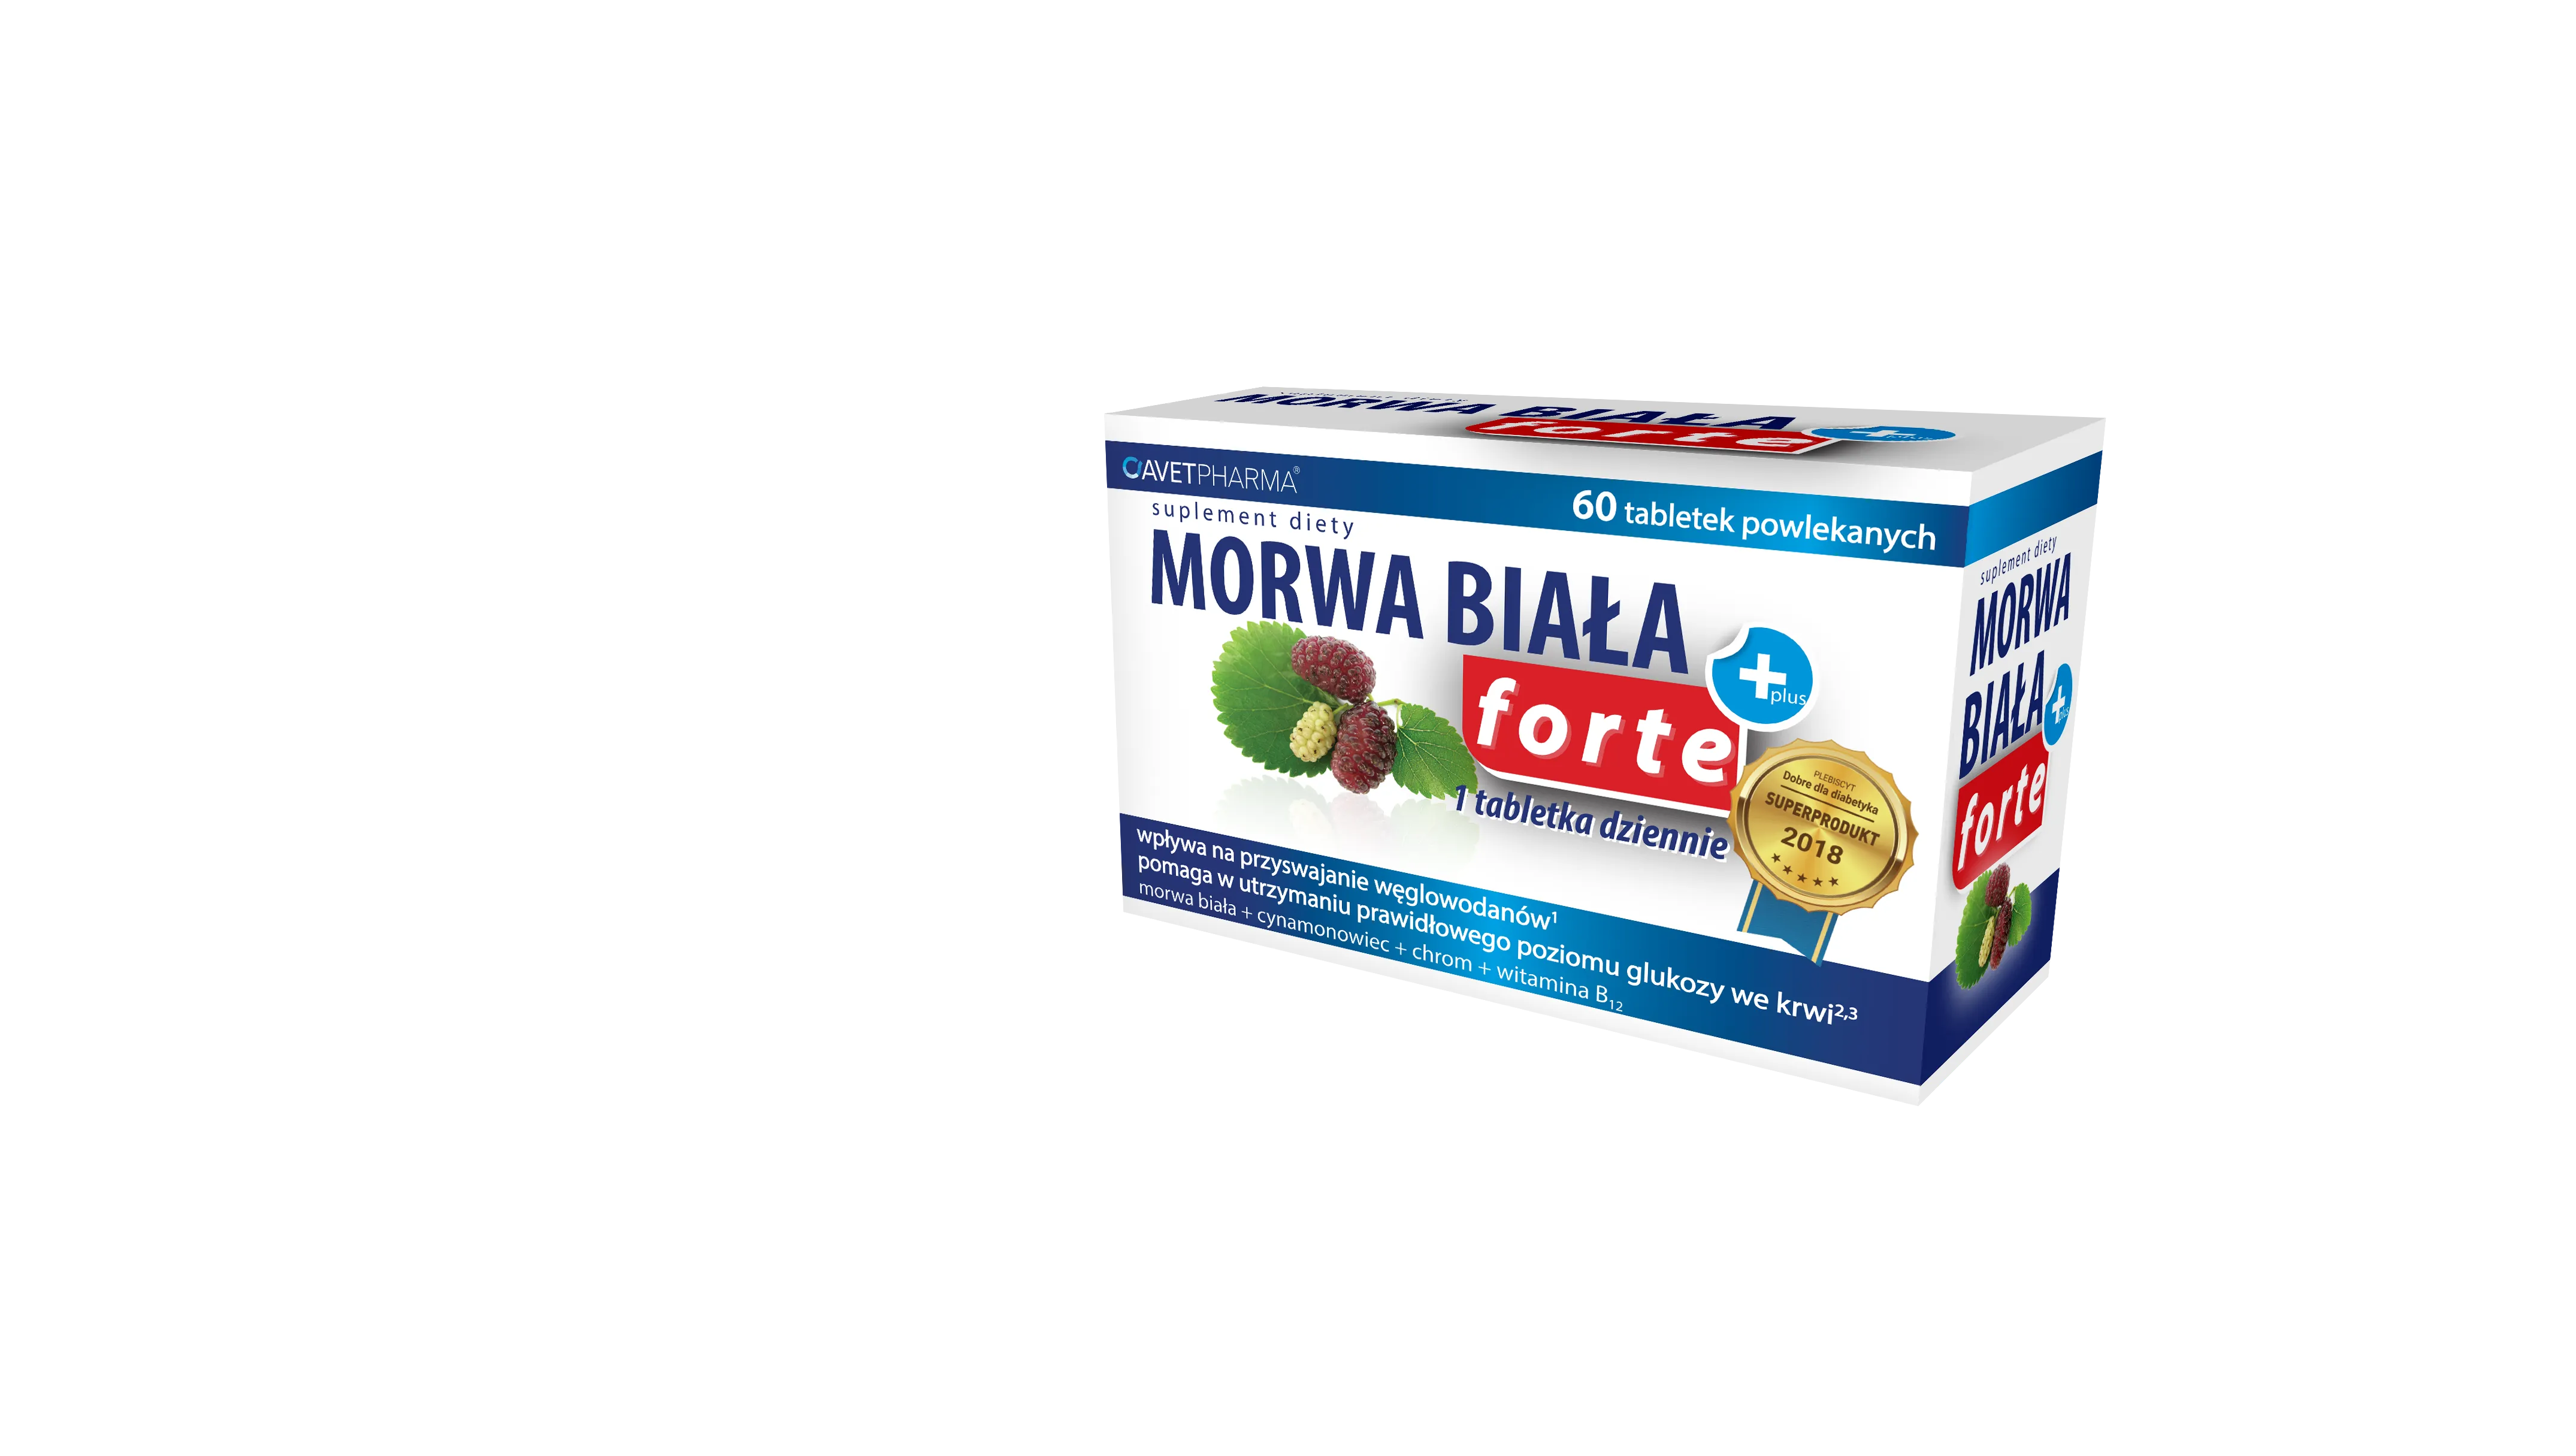 Morwa Biała Plus Forte, suplement diety, 60 tabletek powlekanych